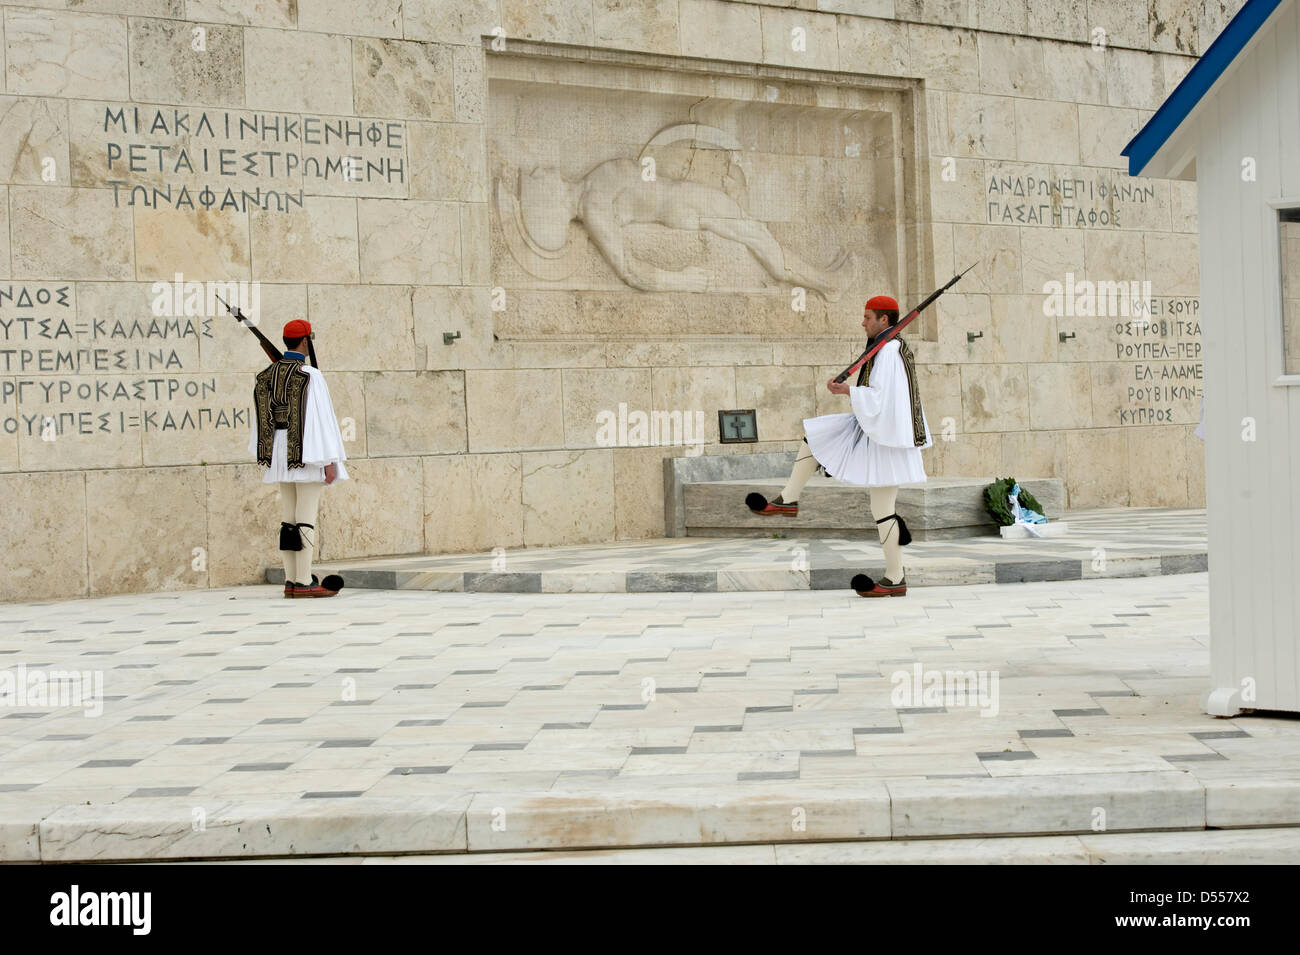 Atene, Grecia, 25 marzo 2013: Grecia il Giorno di Indipendenza. I soldati in abito tradizionale eseguire una cerimonia davanti al Palazzo del Parlamento. Foto Stock